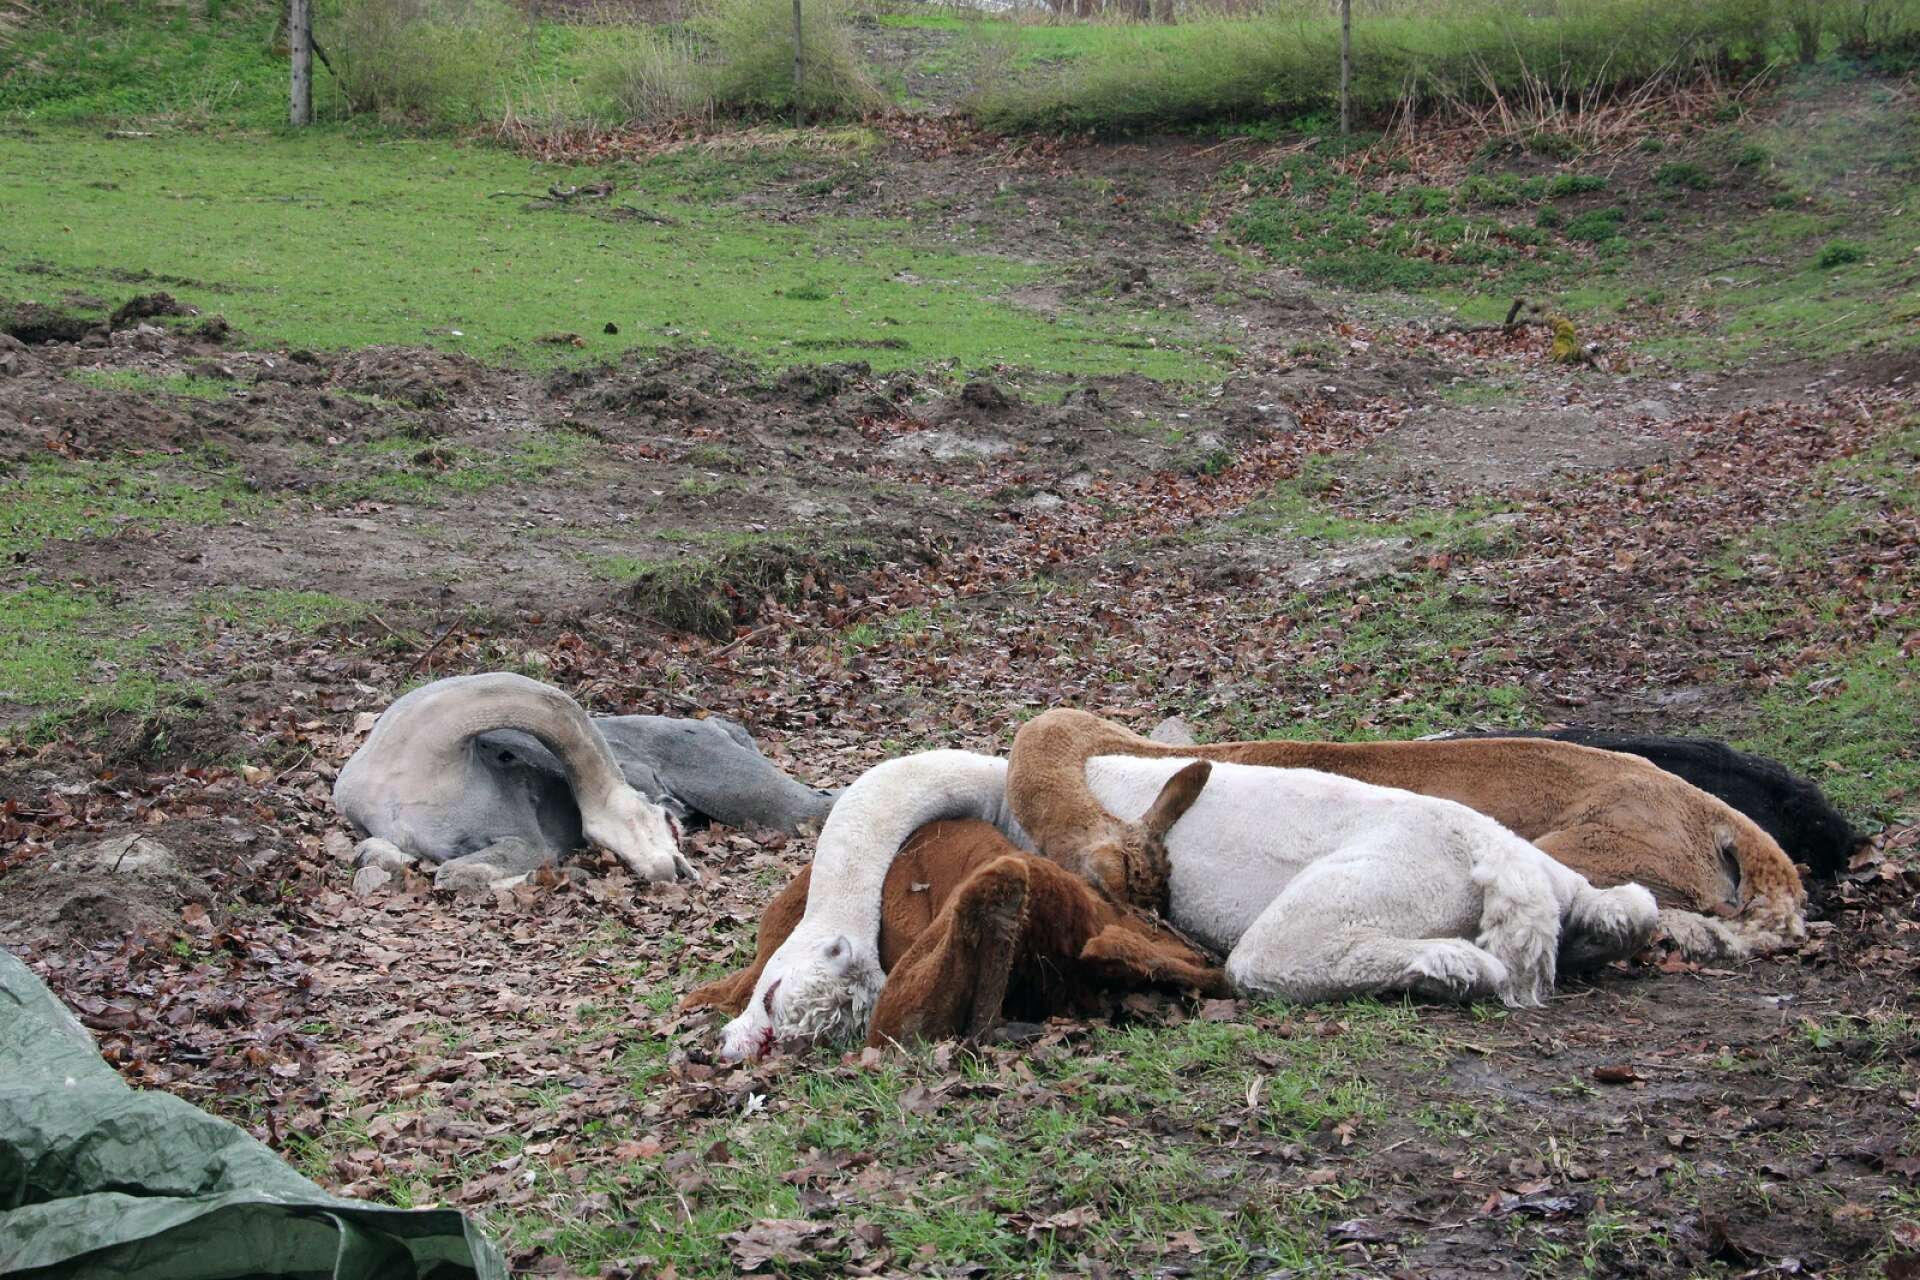 Alpackorna har drabbats av otur tidigare. 2018 hittades fem alpackor döda i hagen på Bäckens Gård efter det att ett åskoväder drog fram den 1 maj. Troligen dödades de av ett blixtnedslag.